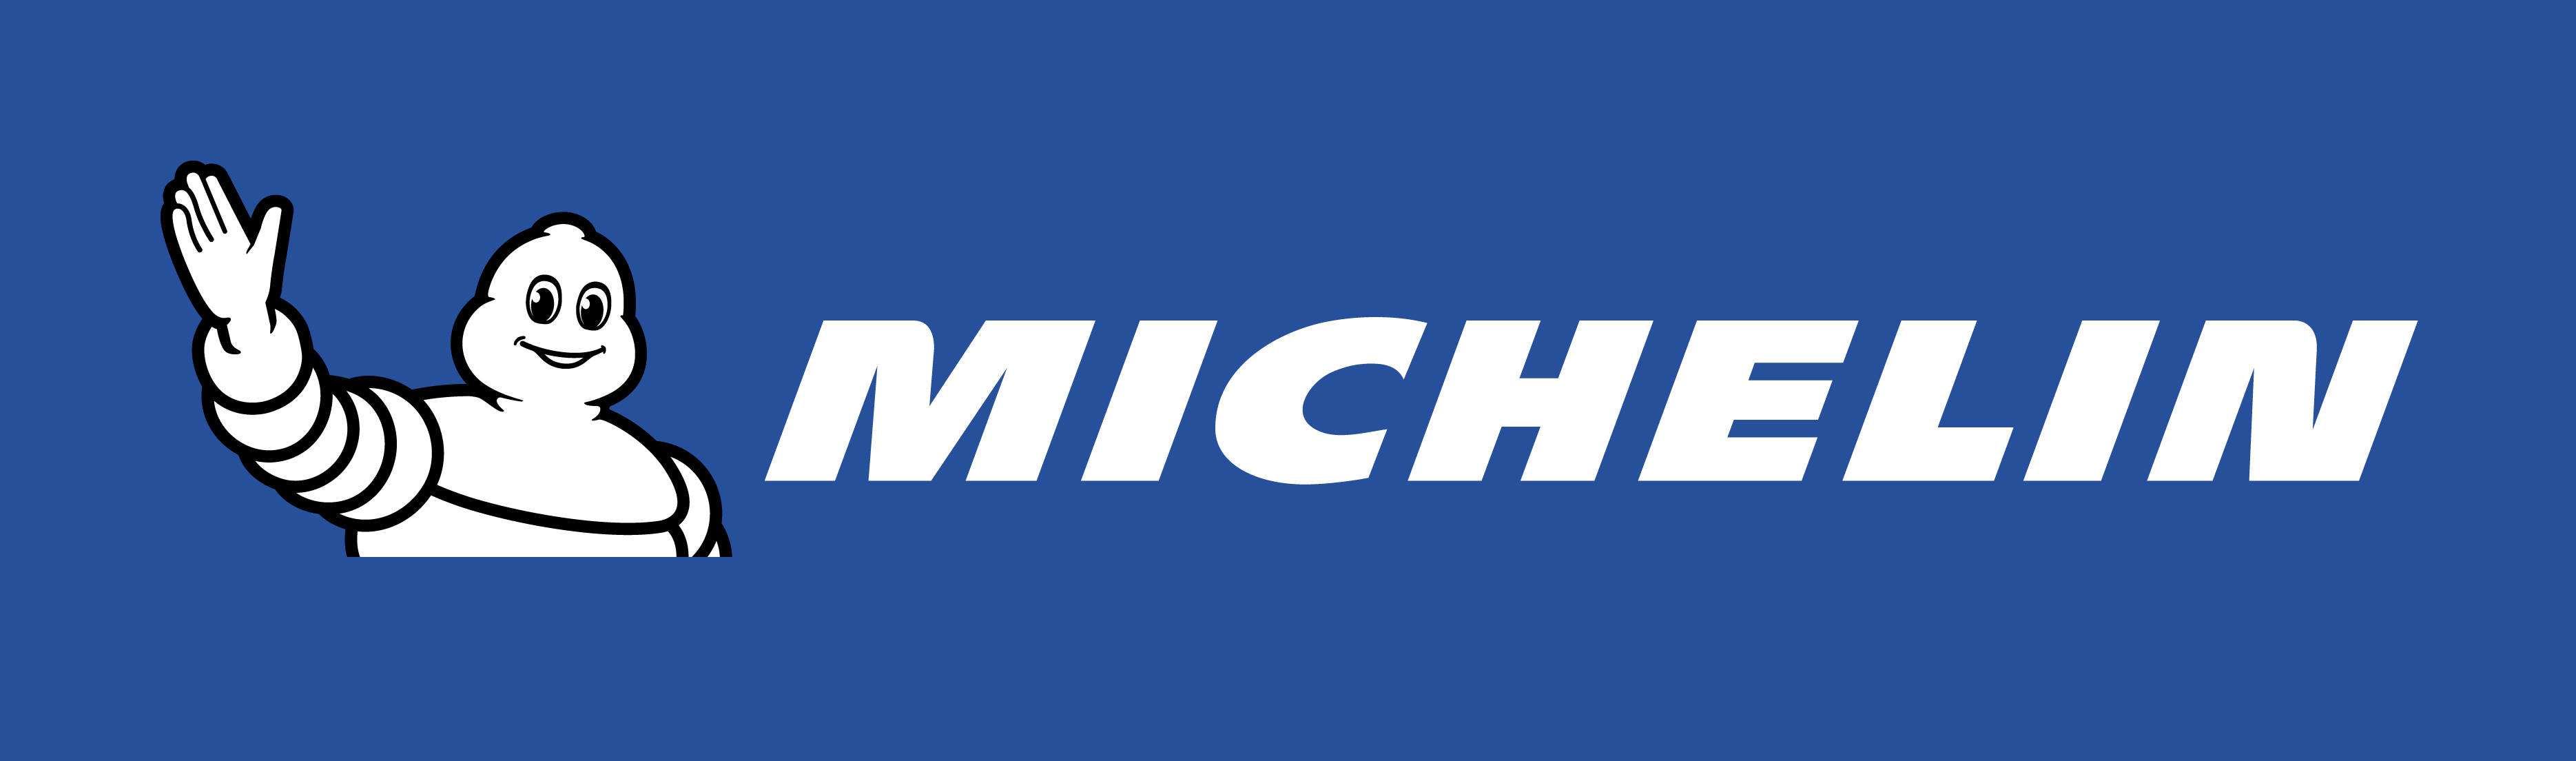 Michelin Blue Logo Wallpaper